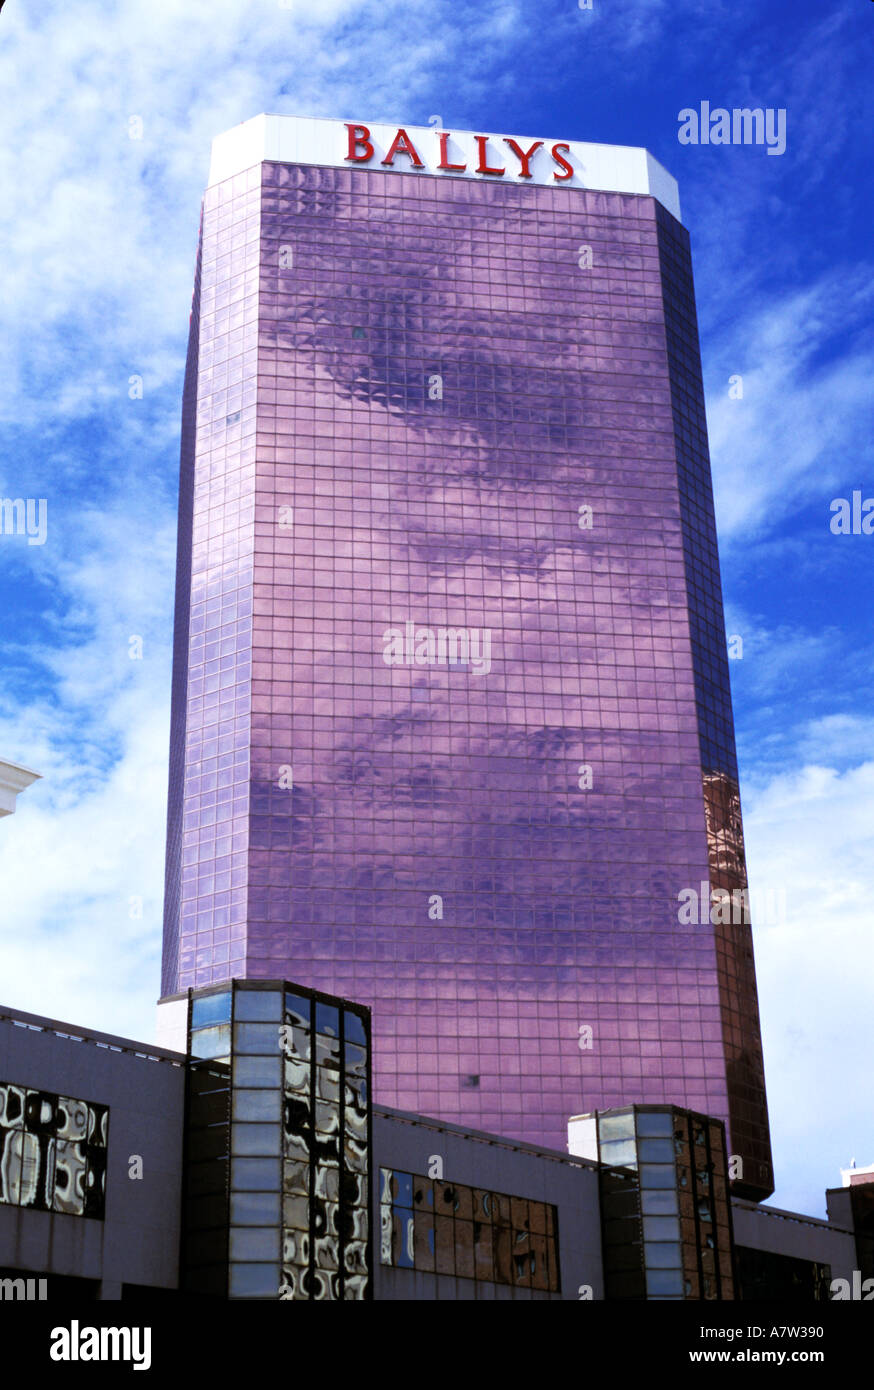 Ballys Hotel and Casino, Atlantic City NJ USA Stock Photo